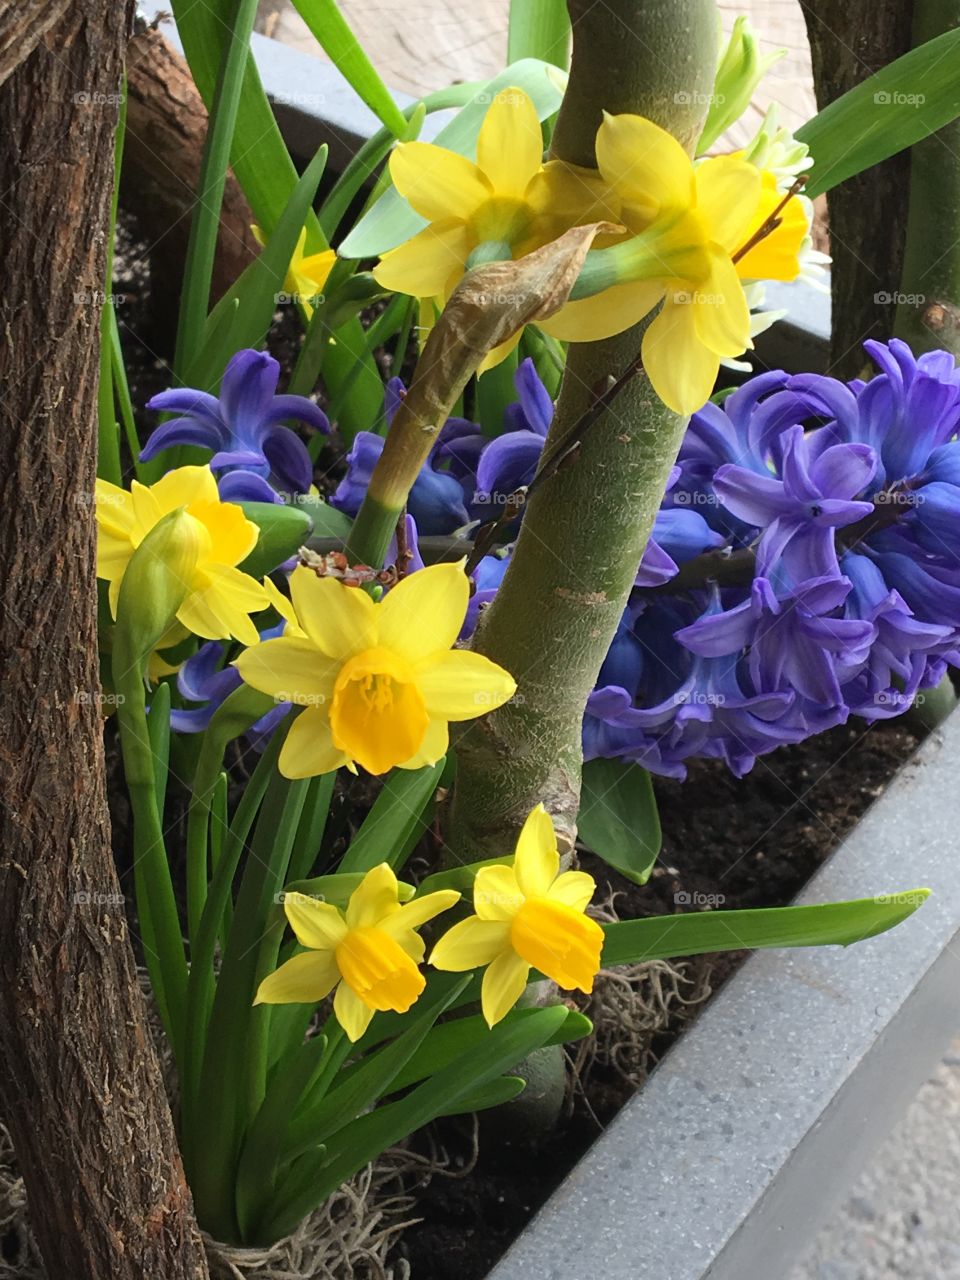 Daffodils & hyacinth 